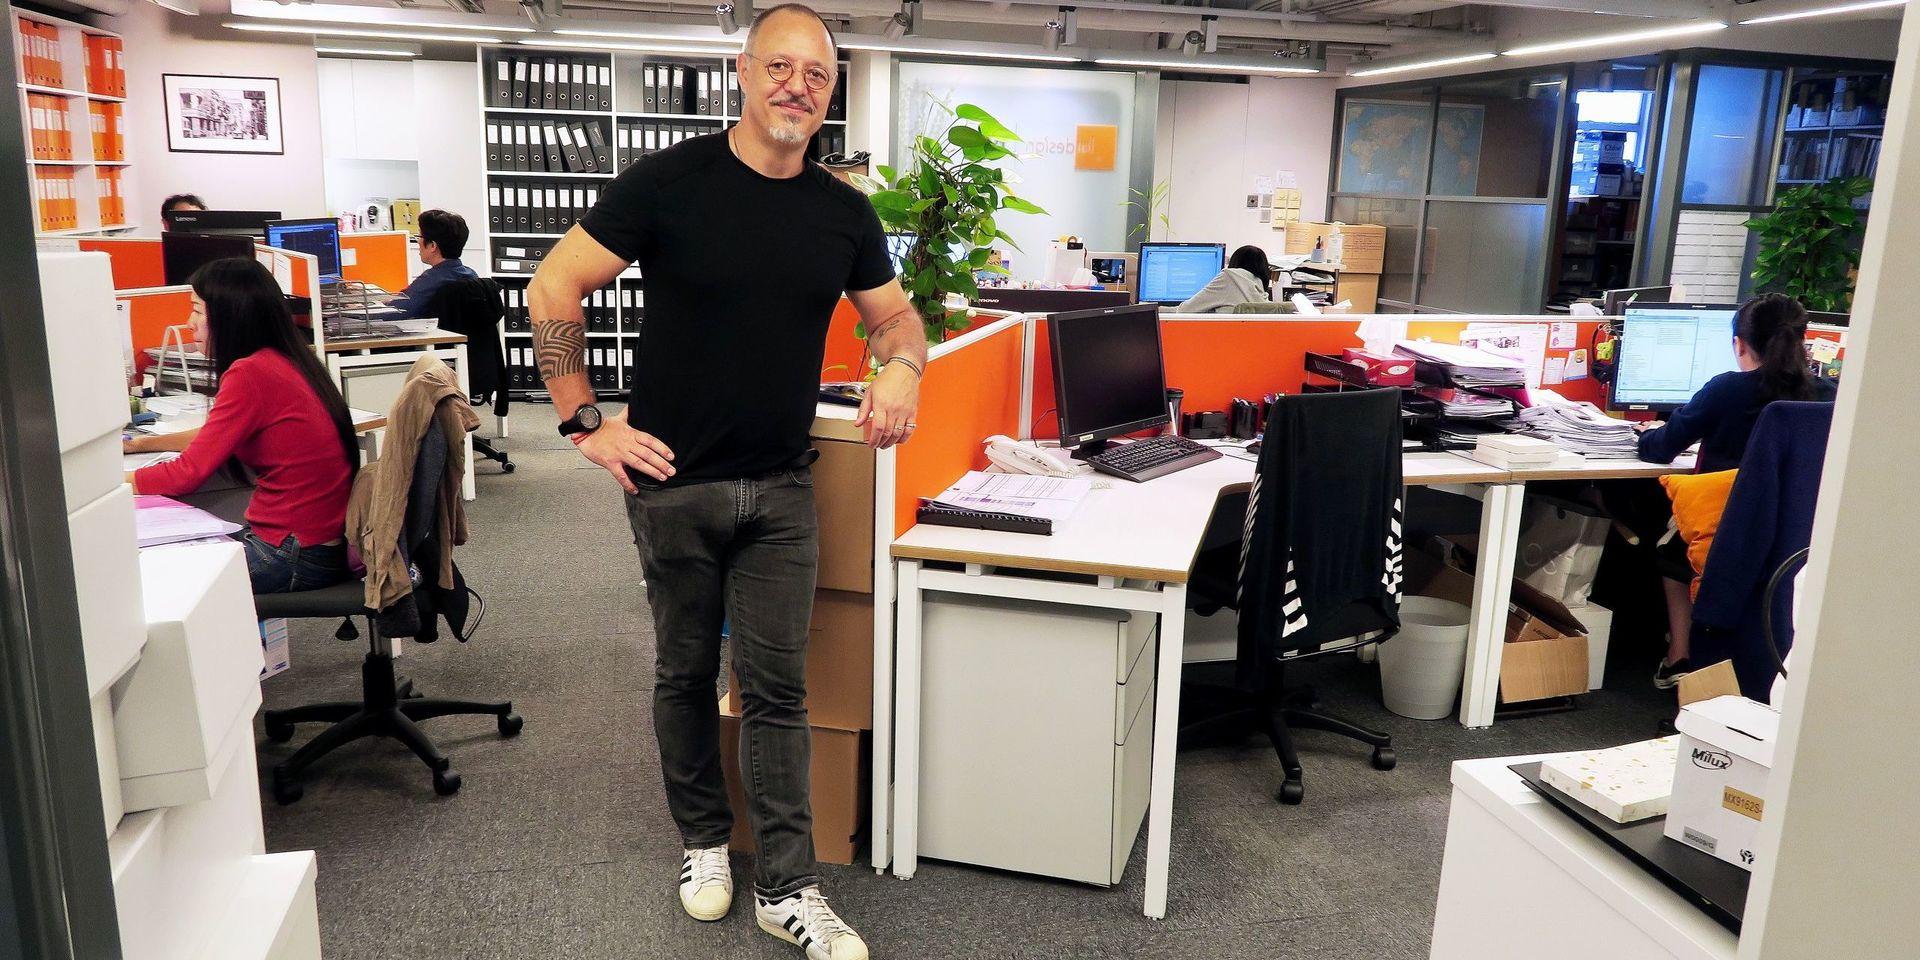 Mikael är chef över M2 Asia i Hong Kong, företaget som han en gång var med och startade hemma i Sverige. Här hjälper Mikael och de tjugo medarbetarna nu europeiska varumärken att etablera butiker runt om i Ostasien. 